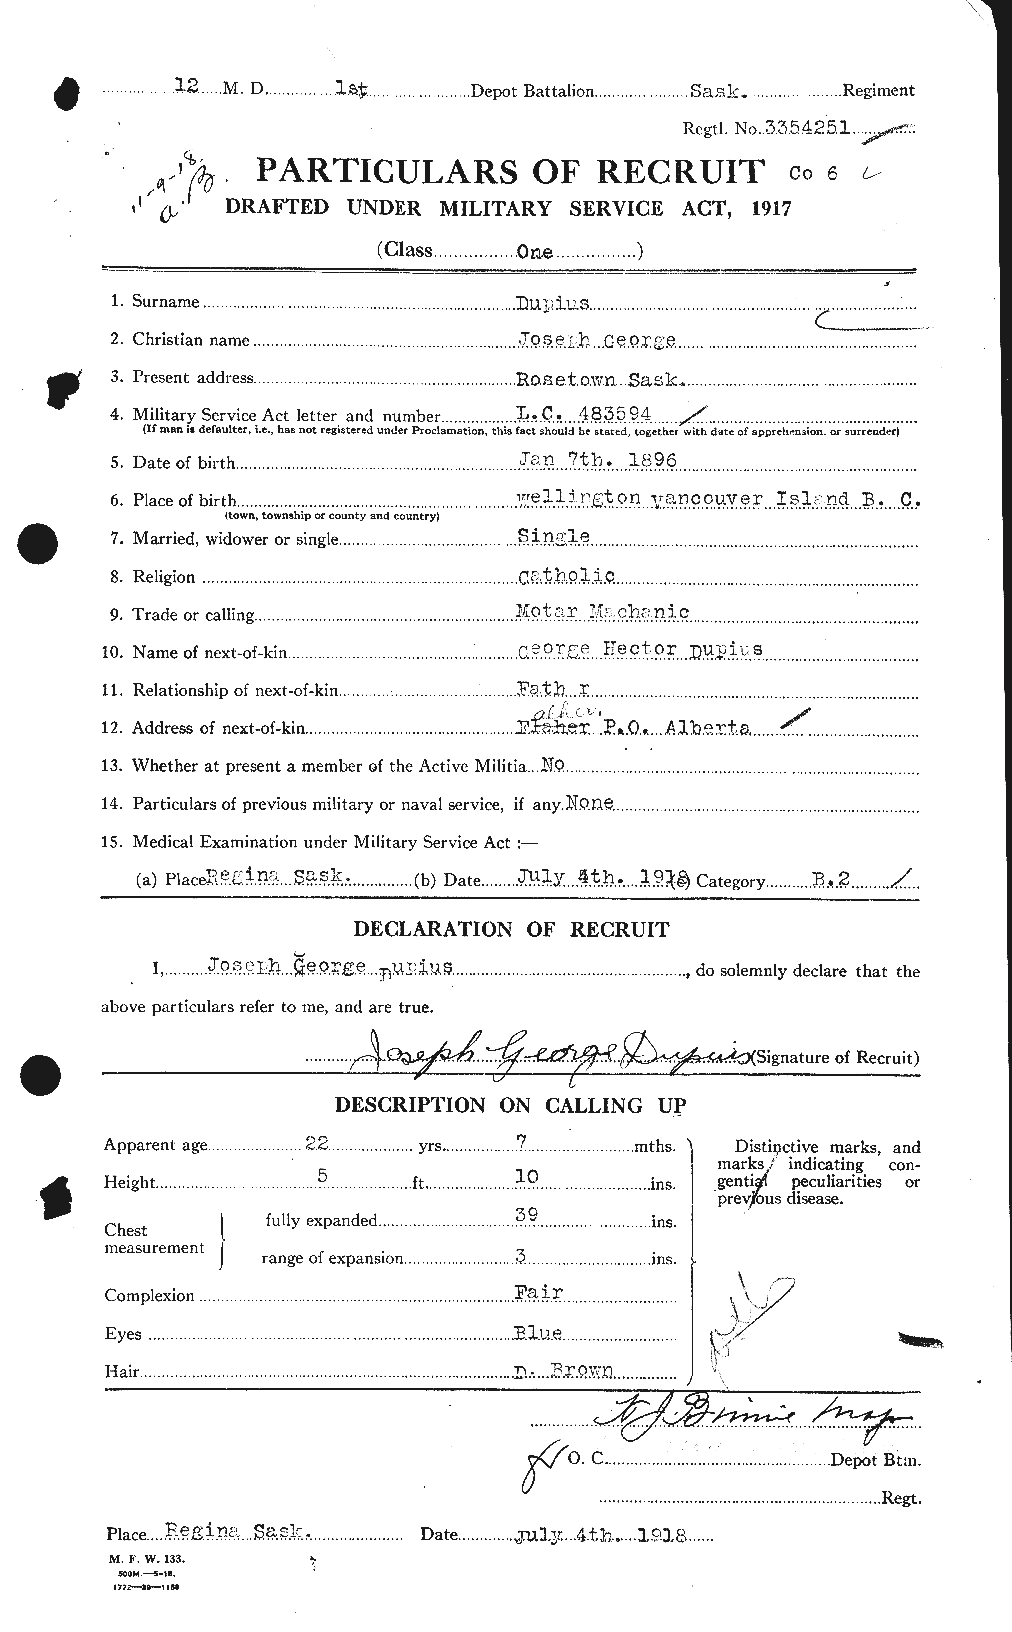 Dossiers du Personnel de la Première Guerre mondiale - CEC 303279a